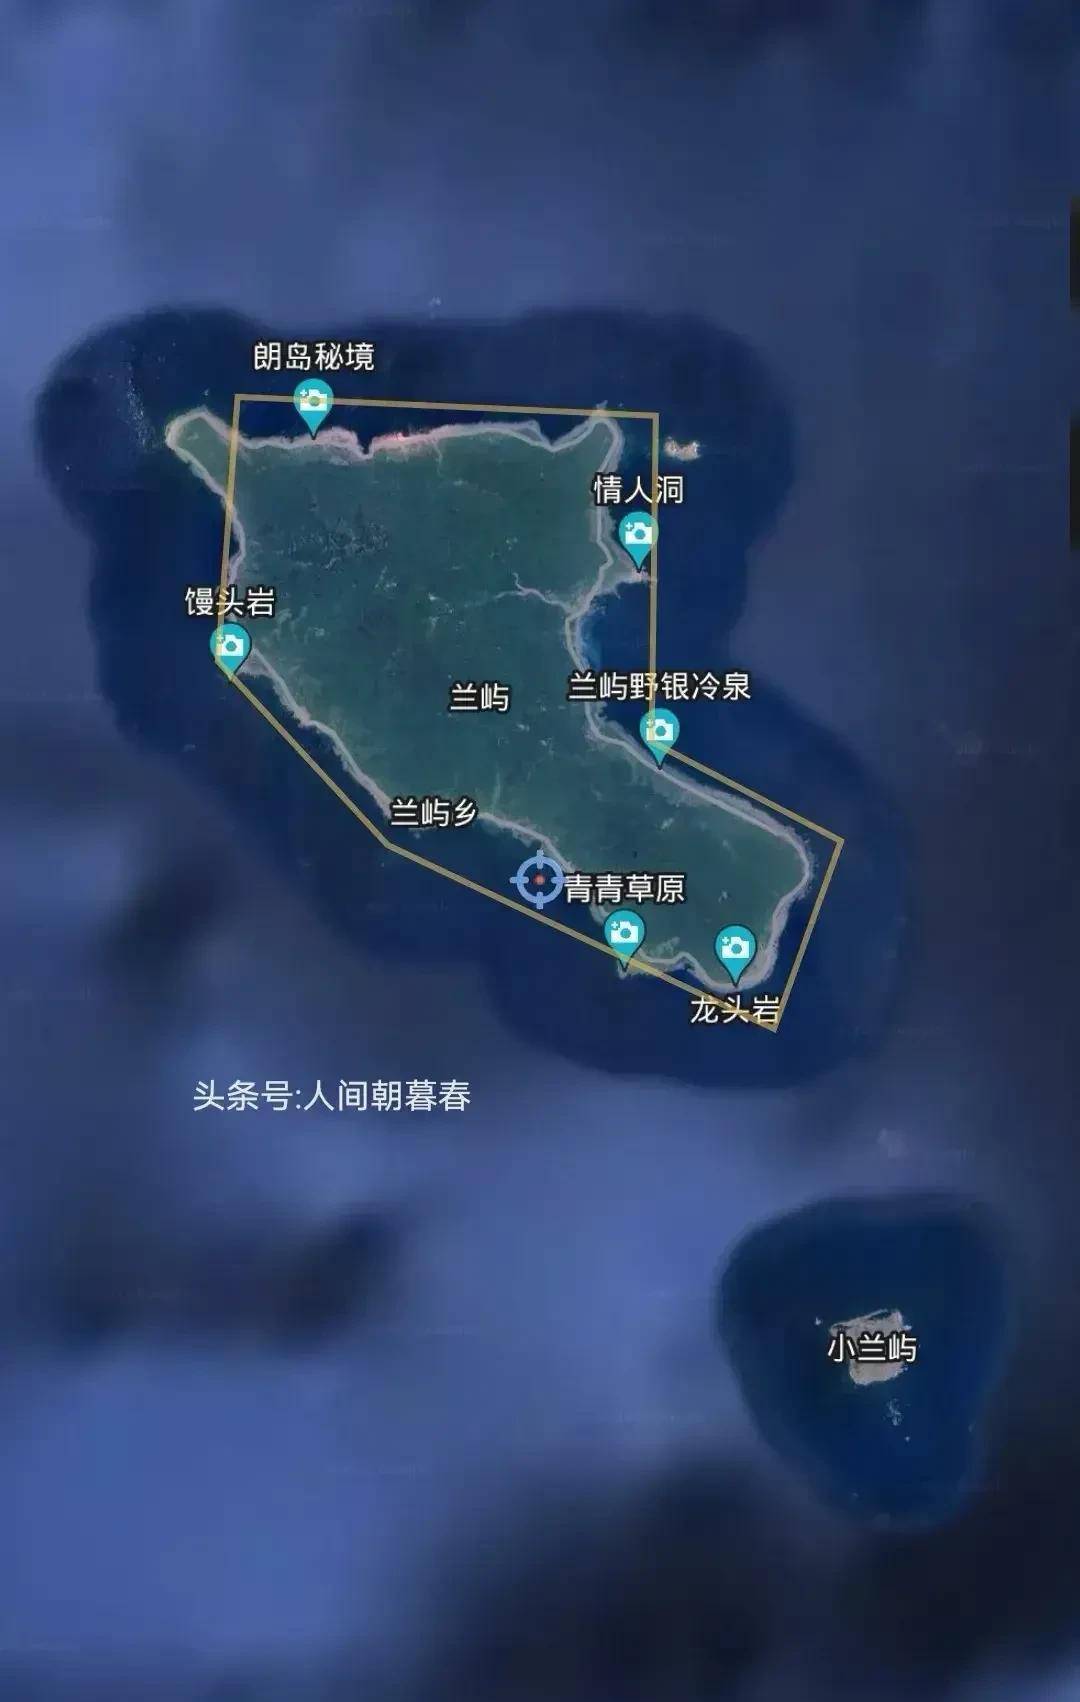 台湾岛有哪些附属岛屿?